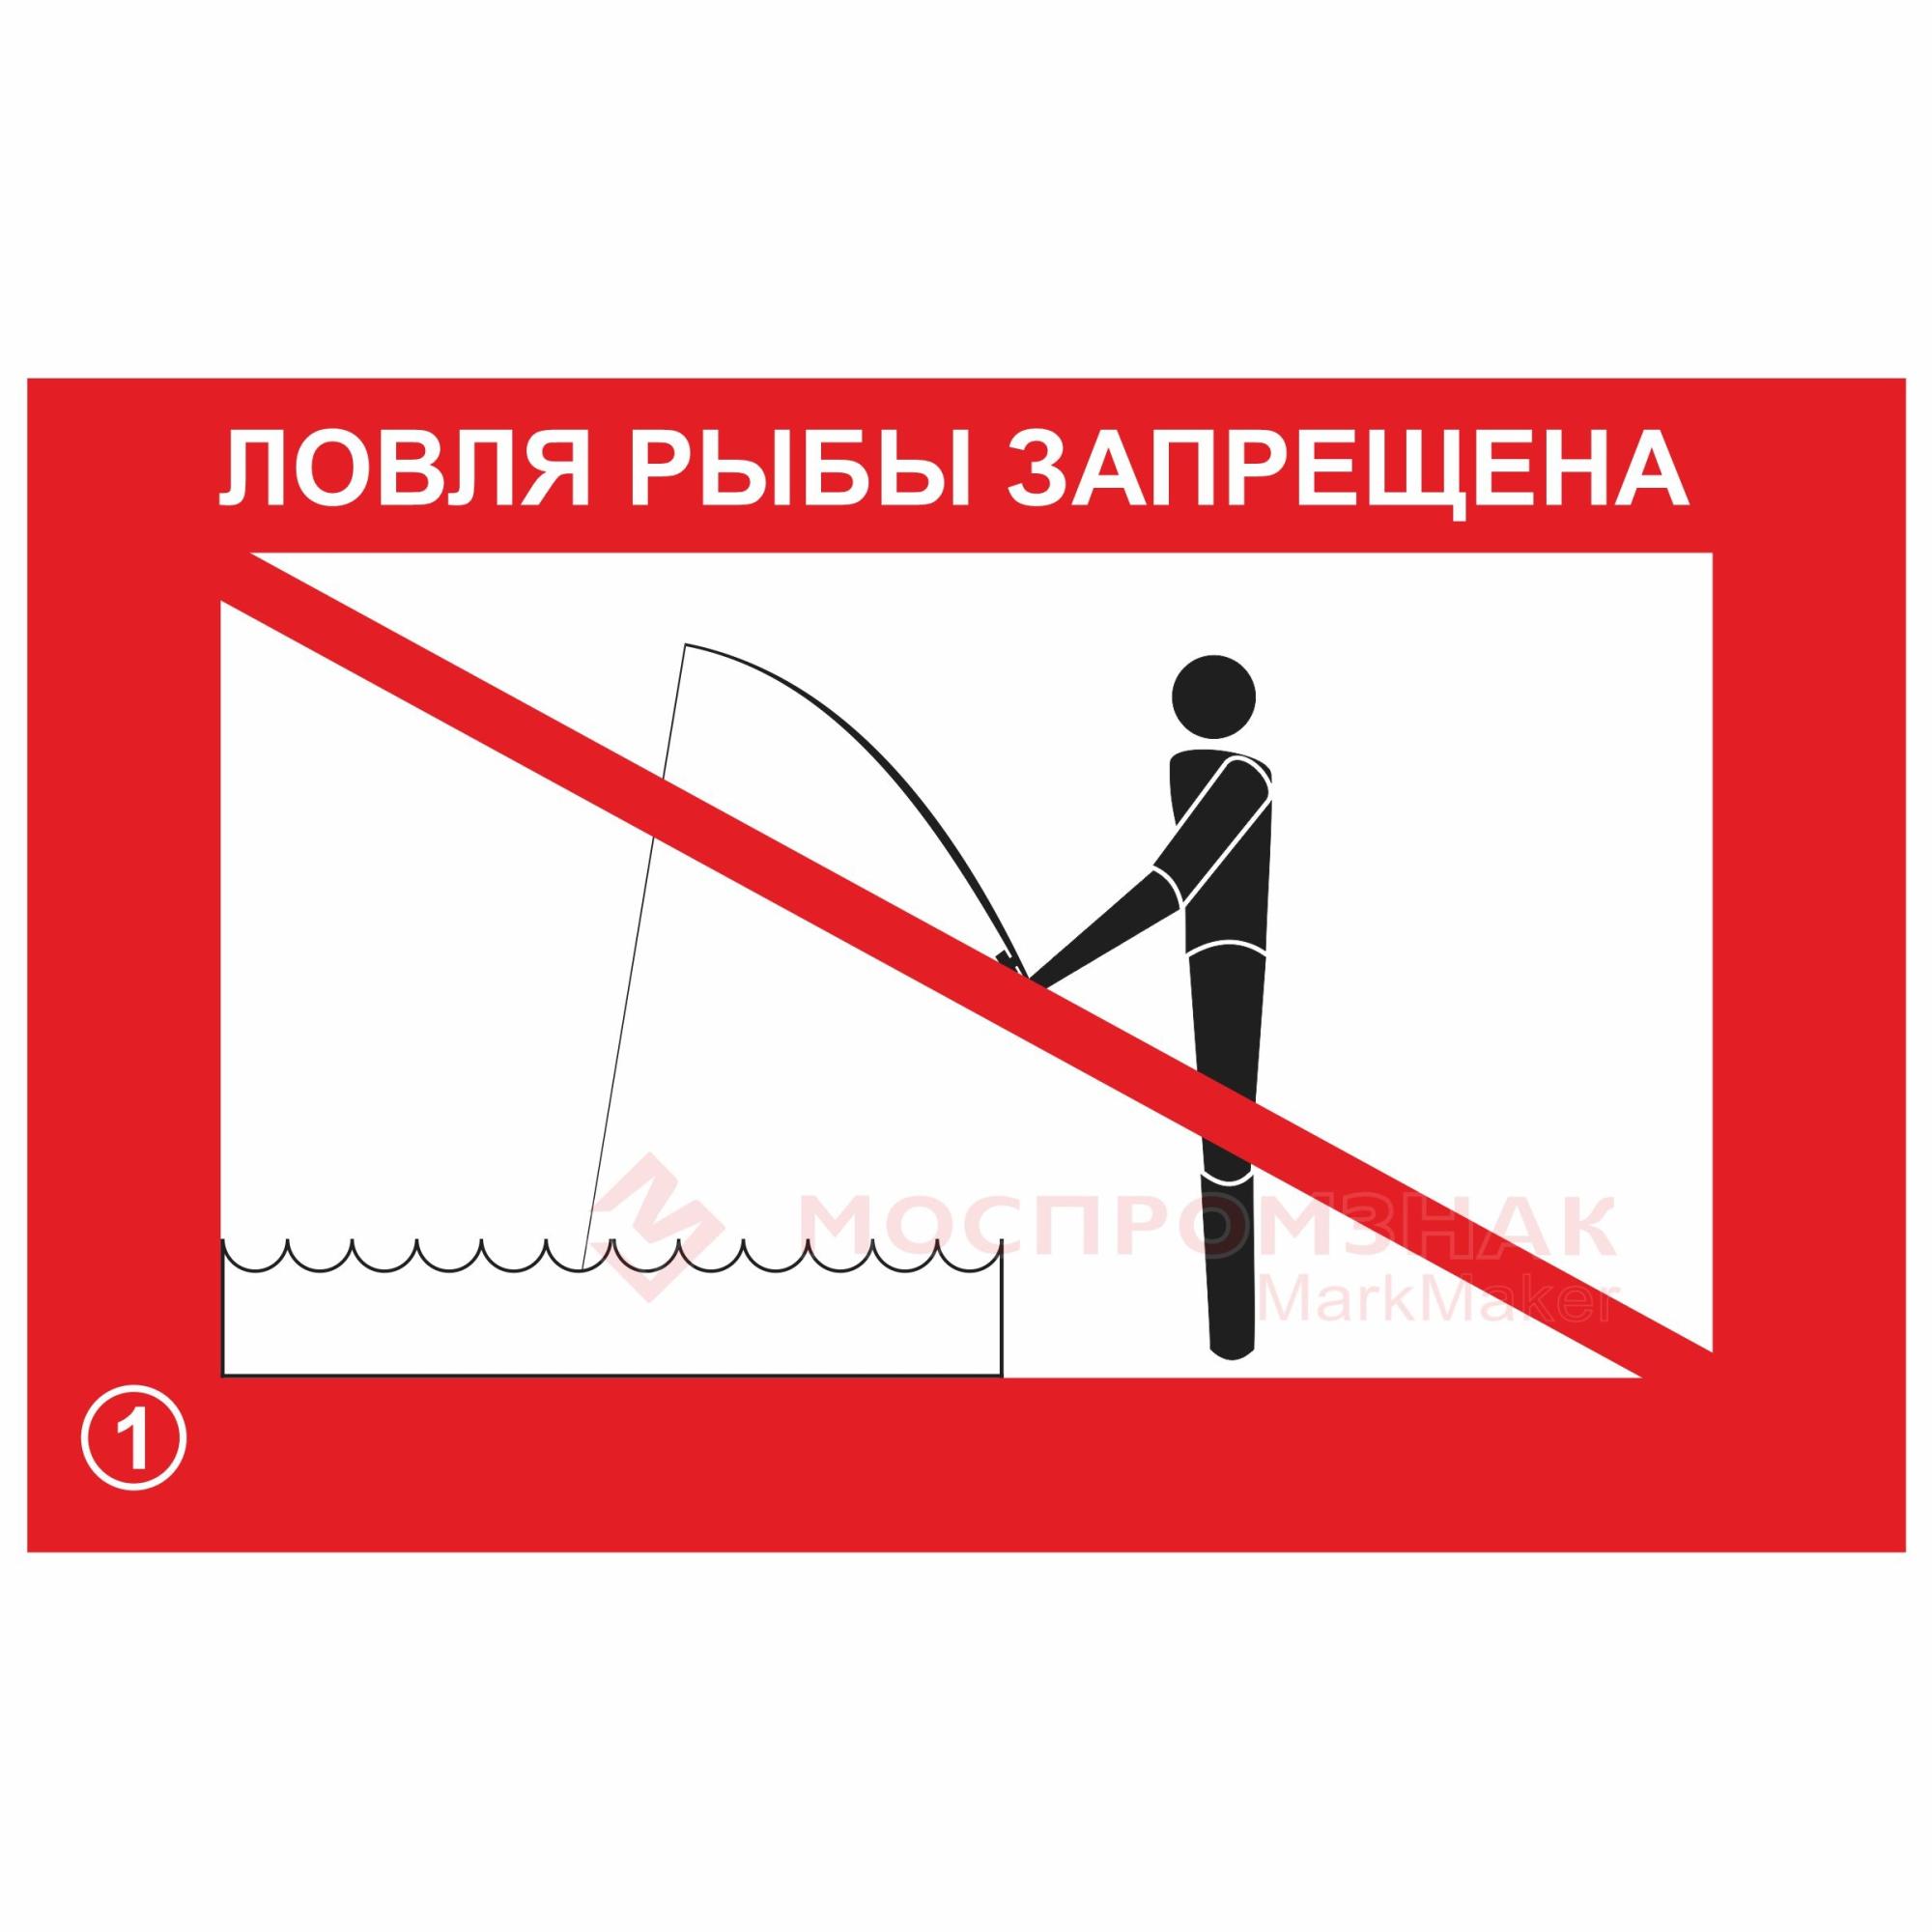 Ловля рыбы запрещена. Ловля рыбы запрещена знак. Ловля рыбы запрещена табличка. Рыбная ловля запрещена табличка.